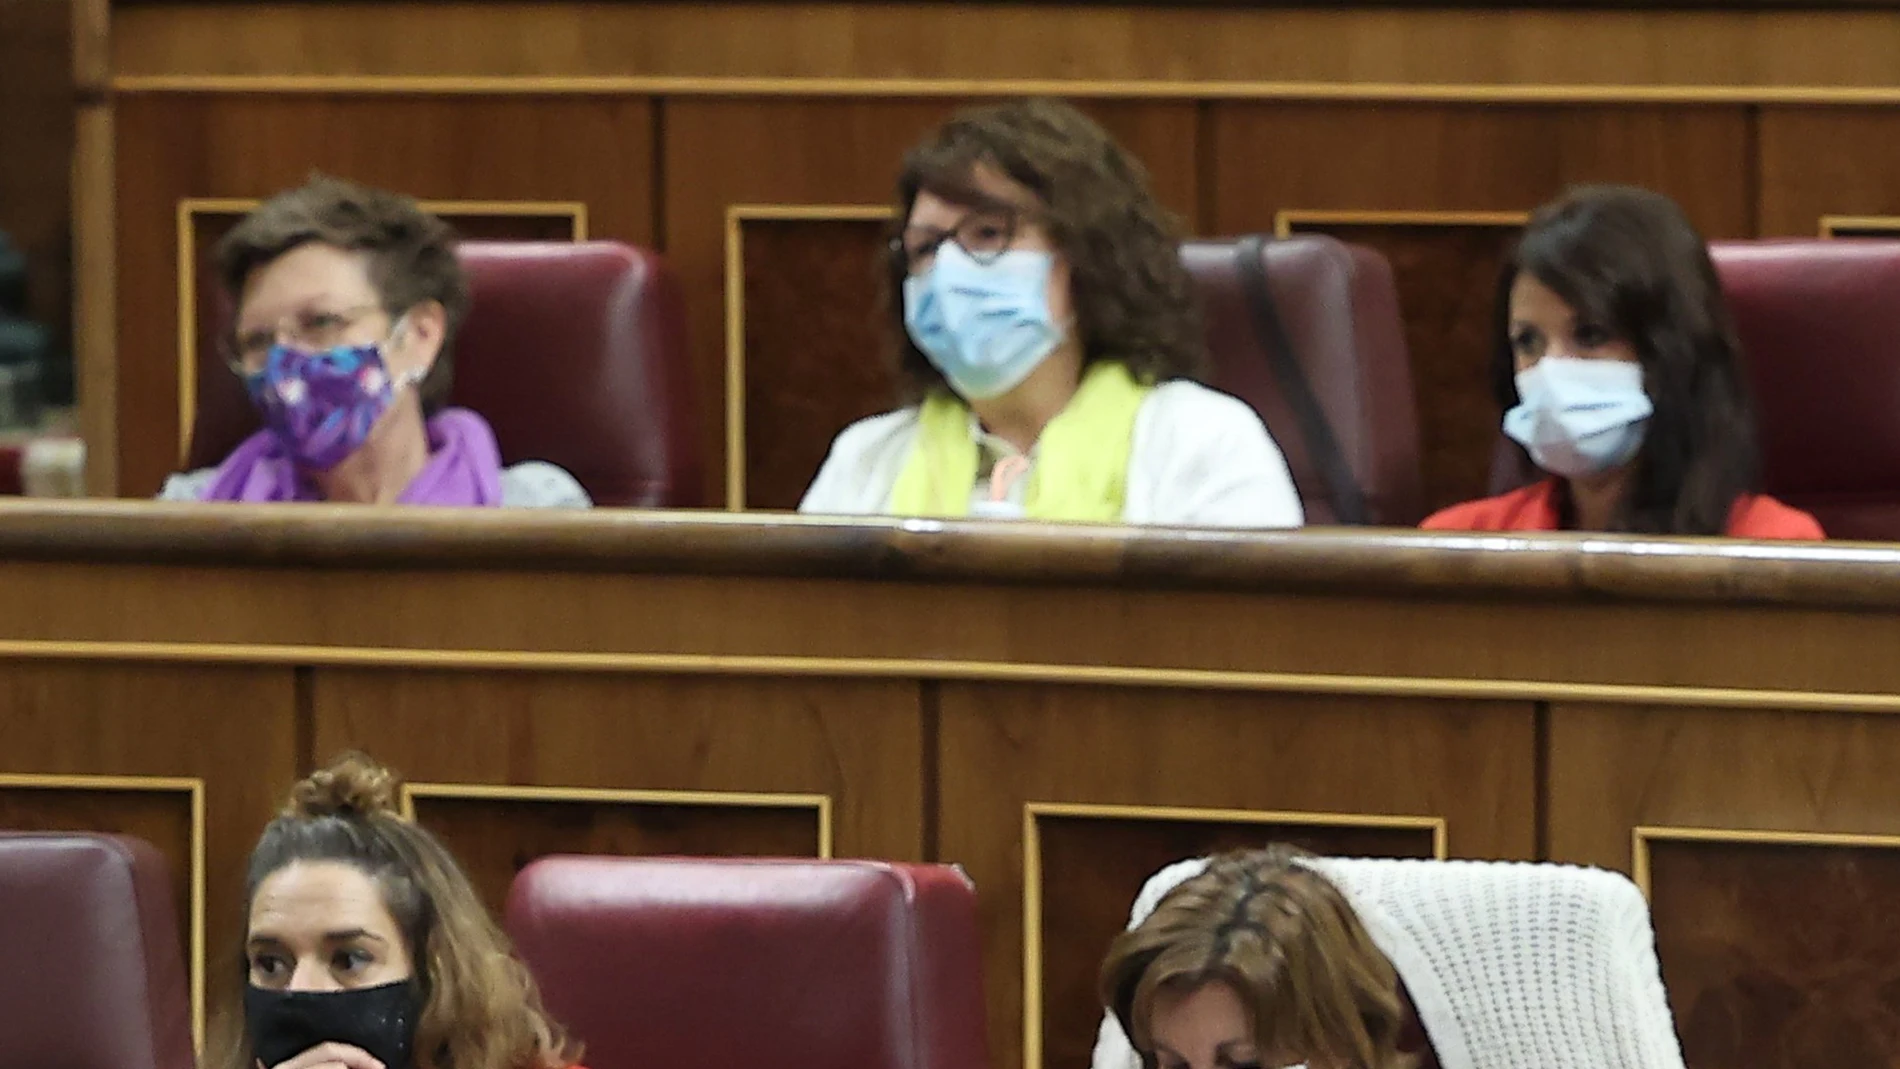 La diputada de Unidas Podemos por Islas Baleares, Antonia Jover, la valenciana Rosa Medel y la diputada por Andalucía Martina Valverde, ataviadas de un fular morado, otro amarillo y una chaqueta roja, imitan los colores de la bandera tricolor